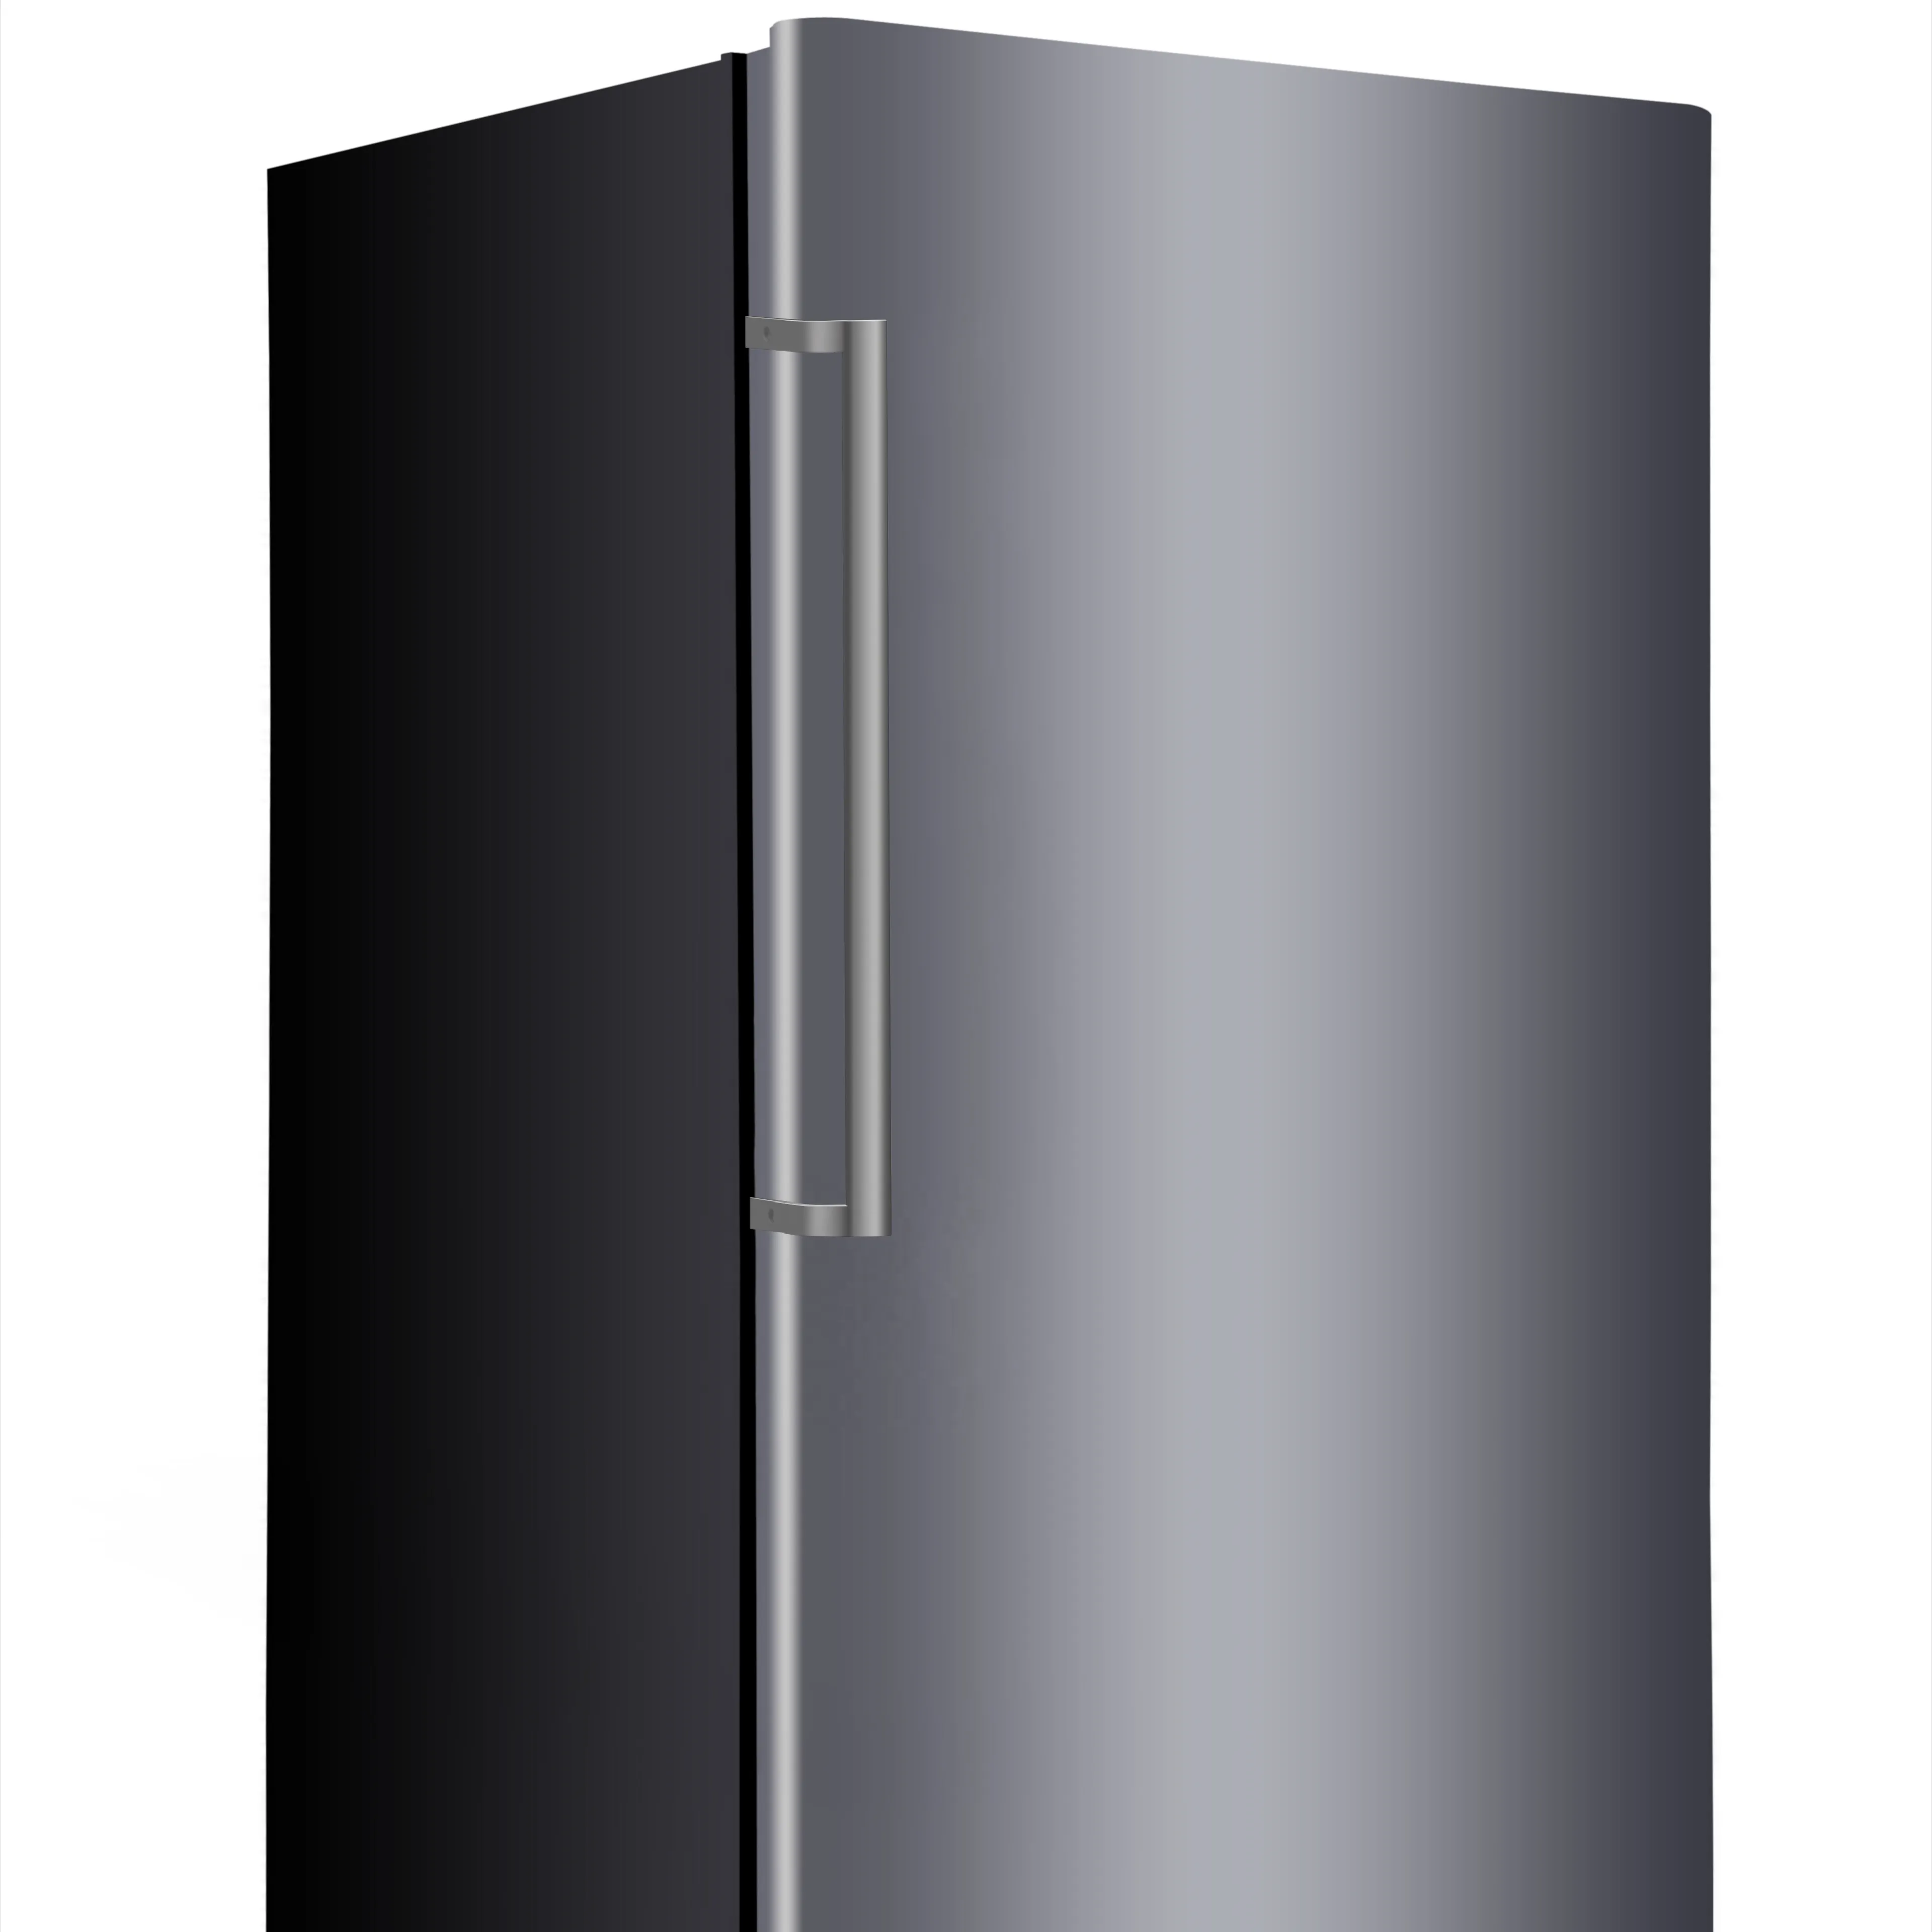 Верикальная холодильная камера XFL-500W/17 Cu.Ft вертикально вертикальный холодильник одной двери размораживания морозильника NO Frost